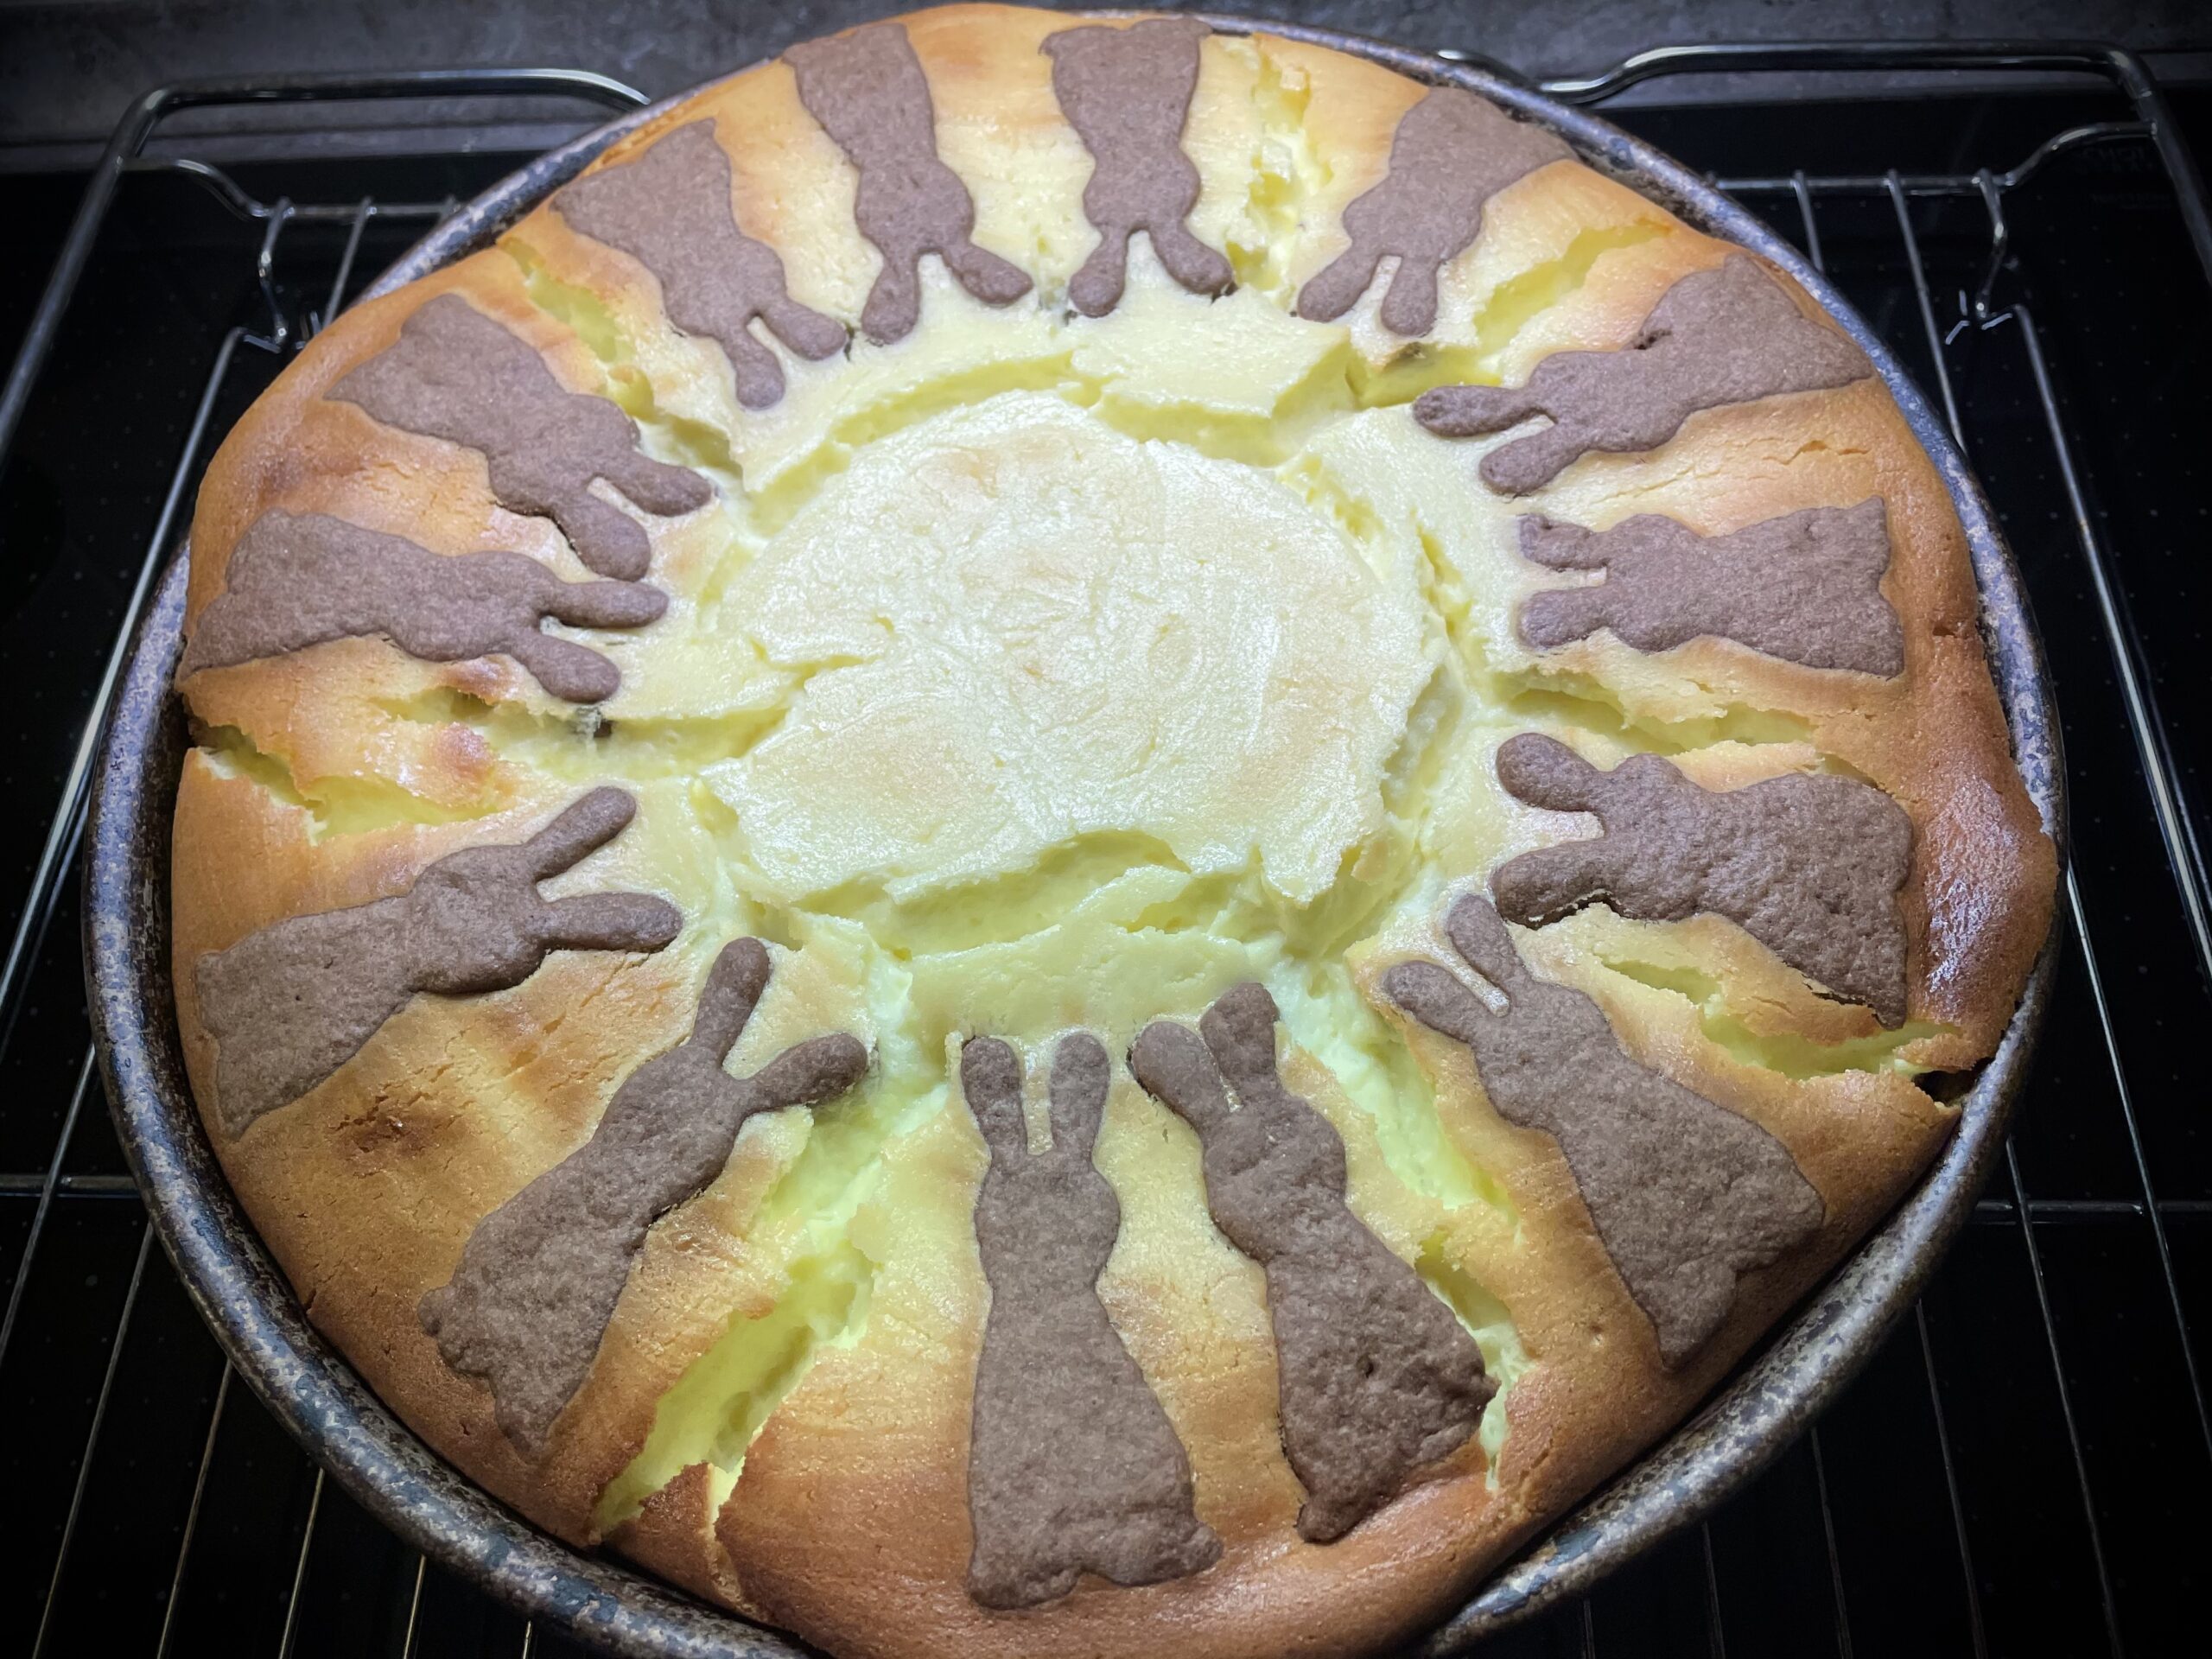 Bild zum Schritt 15 für das Bastel- und DIY-Abenteuer für Kinder: 'Den fertigen Kuchen lasst ihr in der Kuchenform auskühlen! Die...'